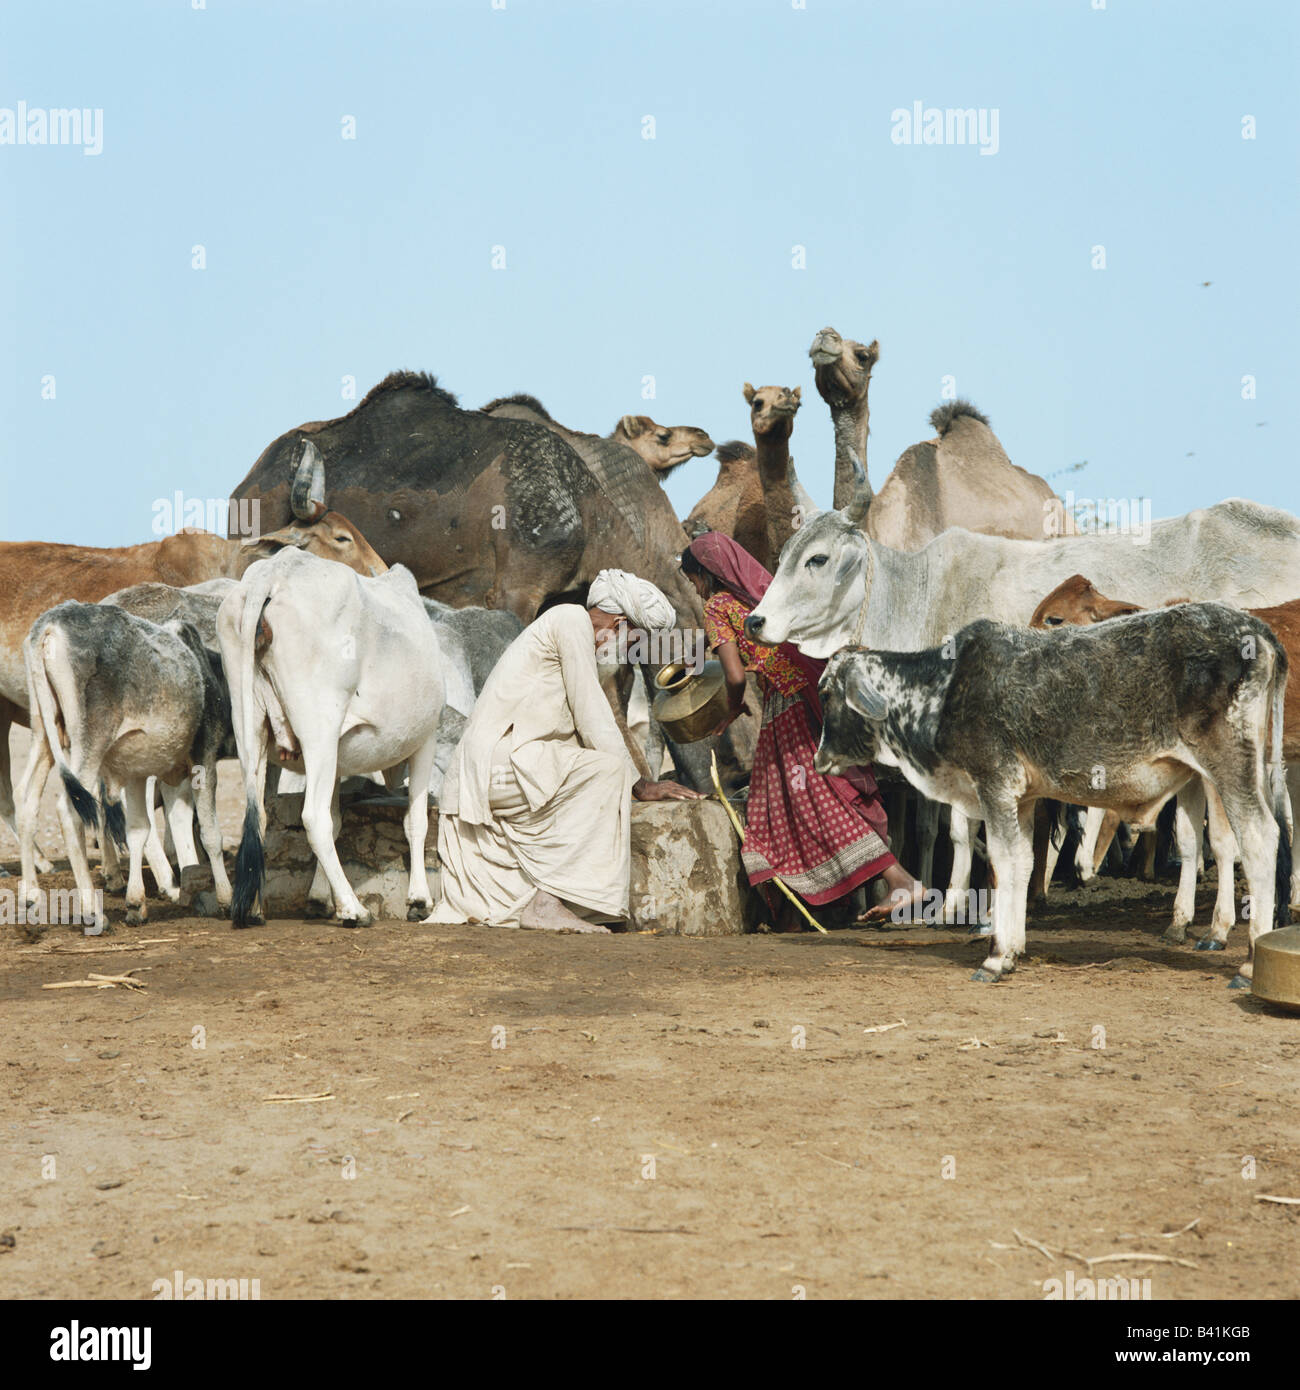 Deserto di Thar, Rajasthan, India. Anziani uomo indiano e la giovane donna di ottenere acqua da un deserto remoto ben per bovini e cammelli. Foto Stock